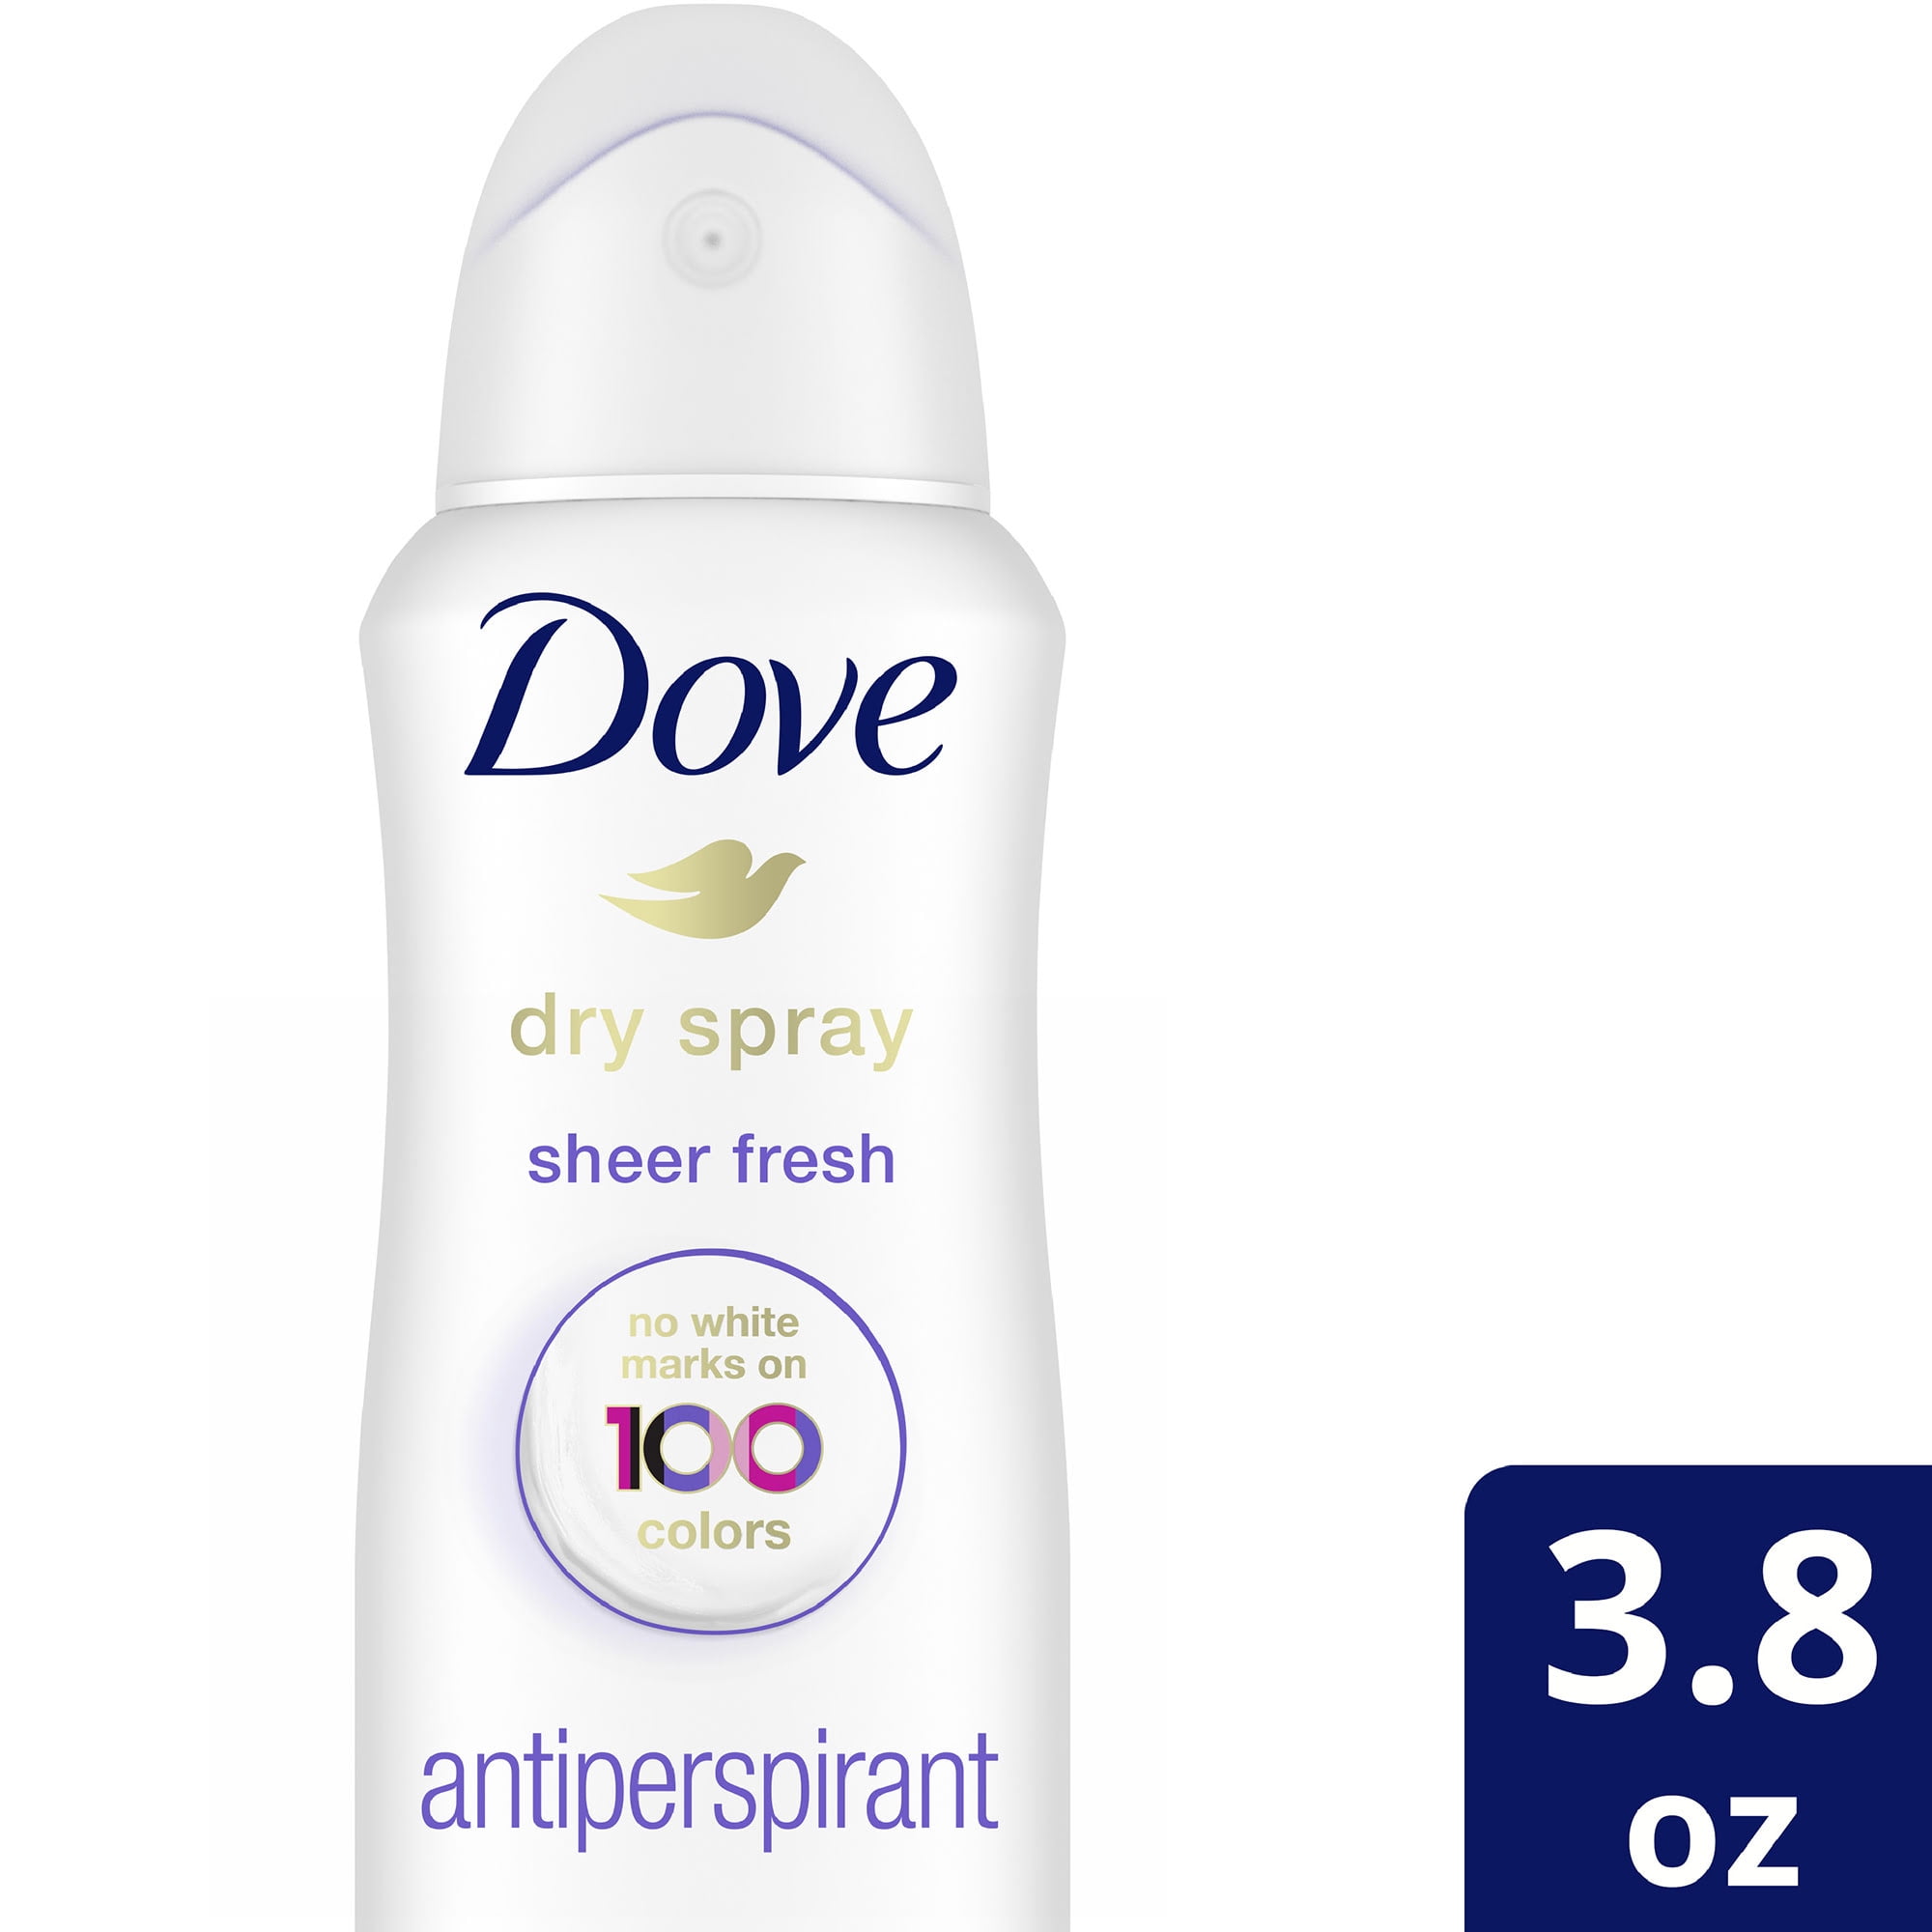 Dove Dry Spray Invisible Sheer Fresh Antiperspirant Deodorant, 3.8 oz